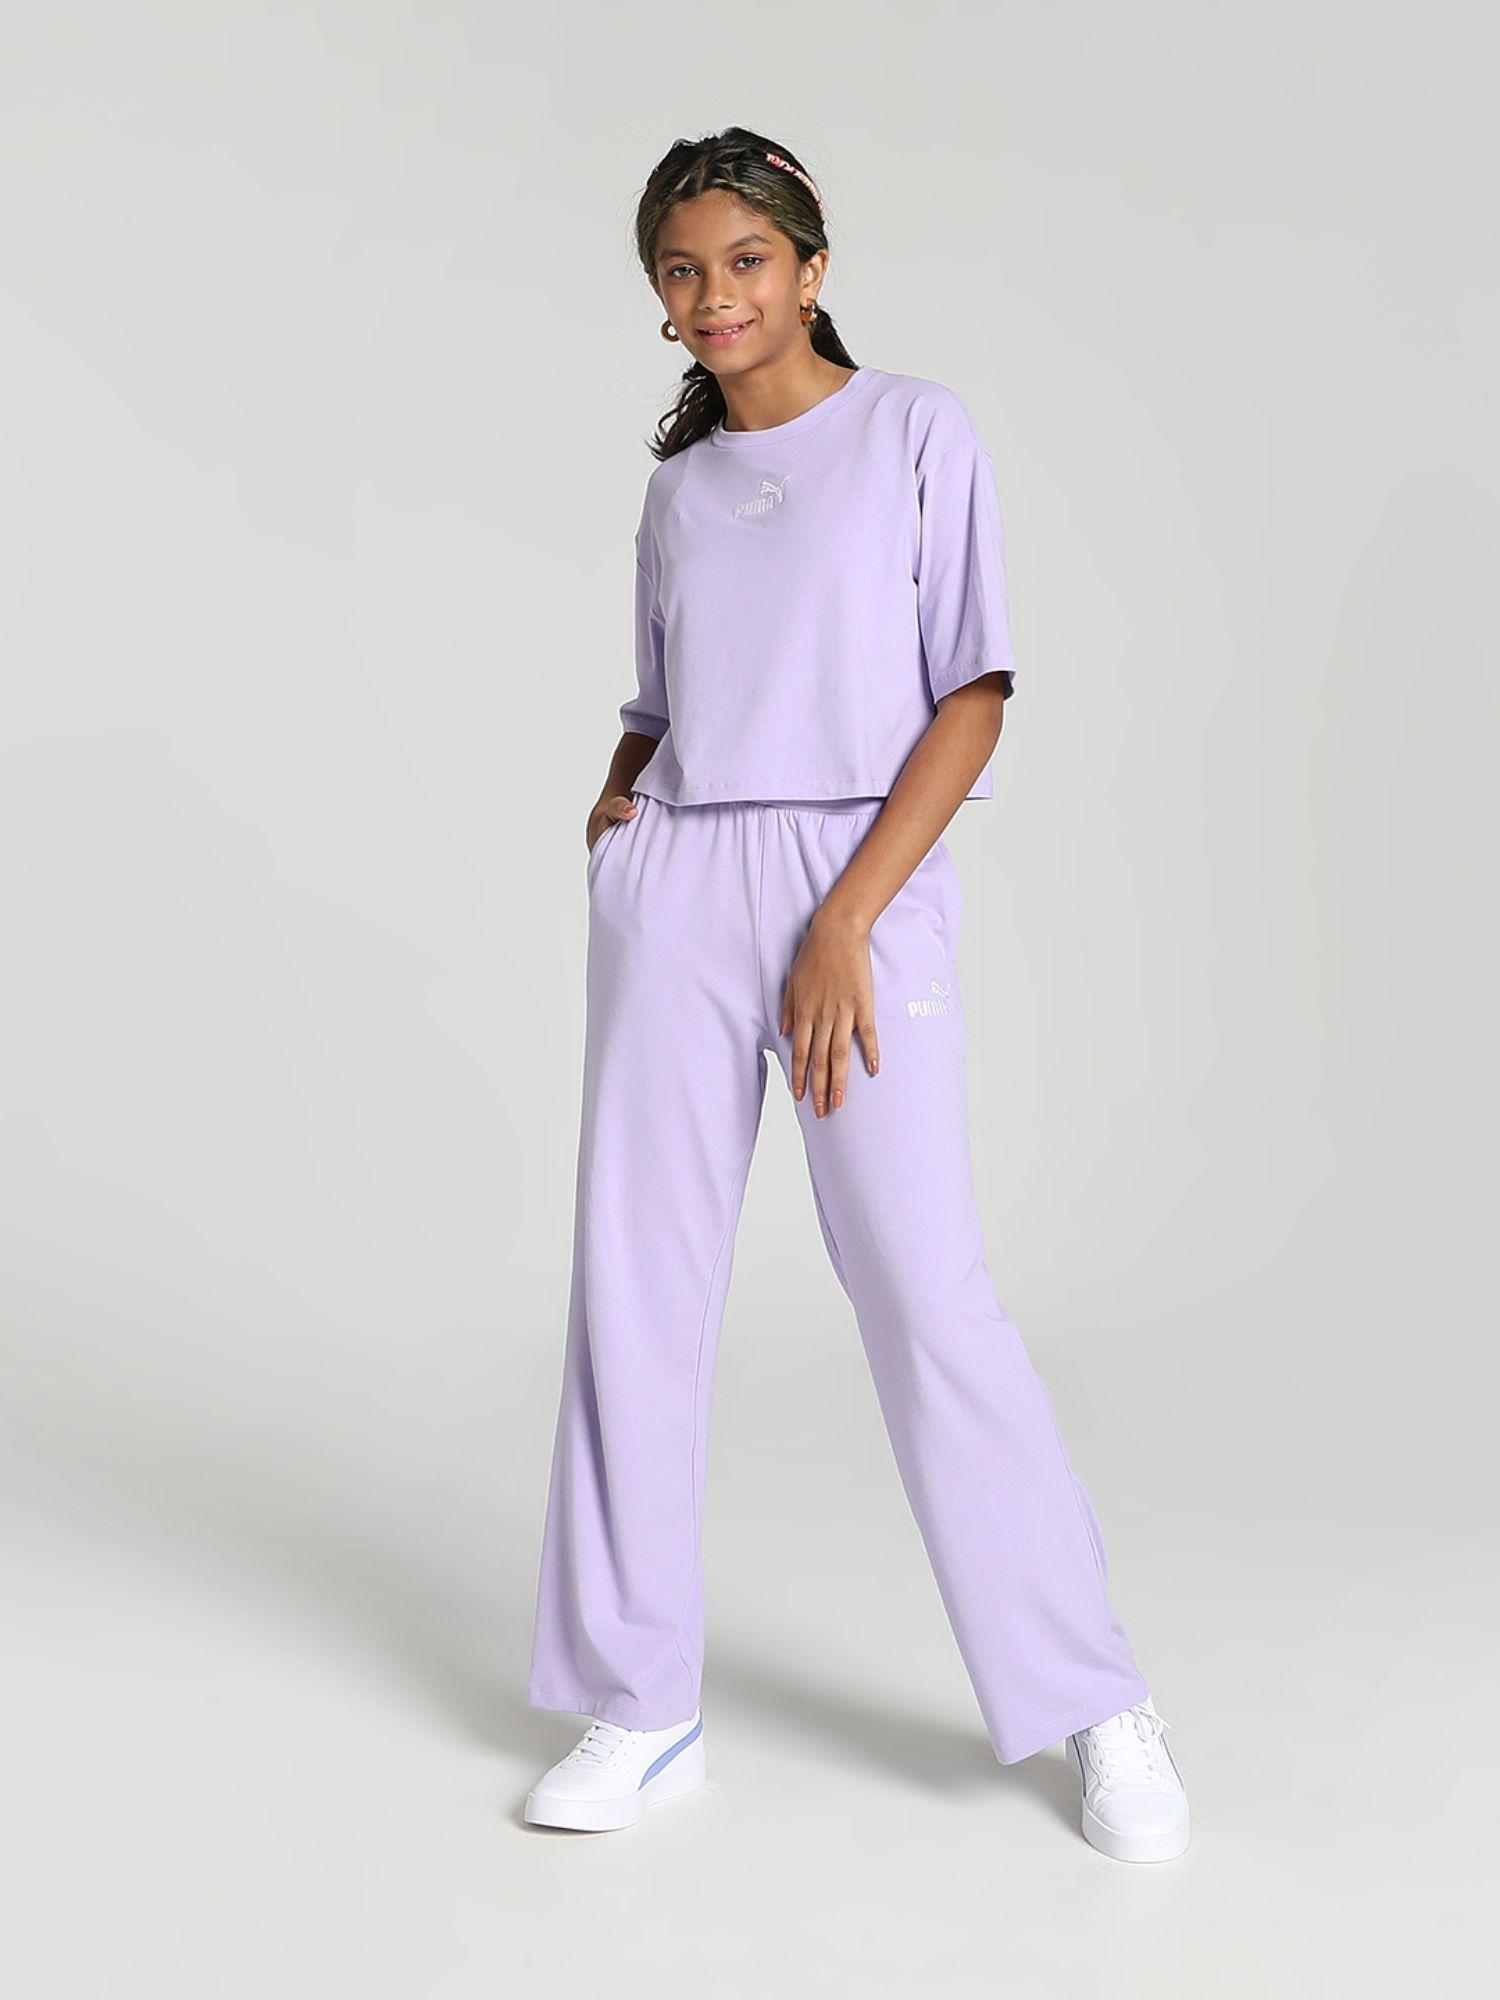 co-ord girls purple jog suit